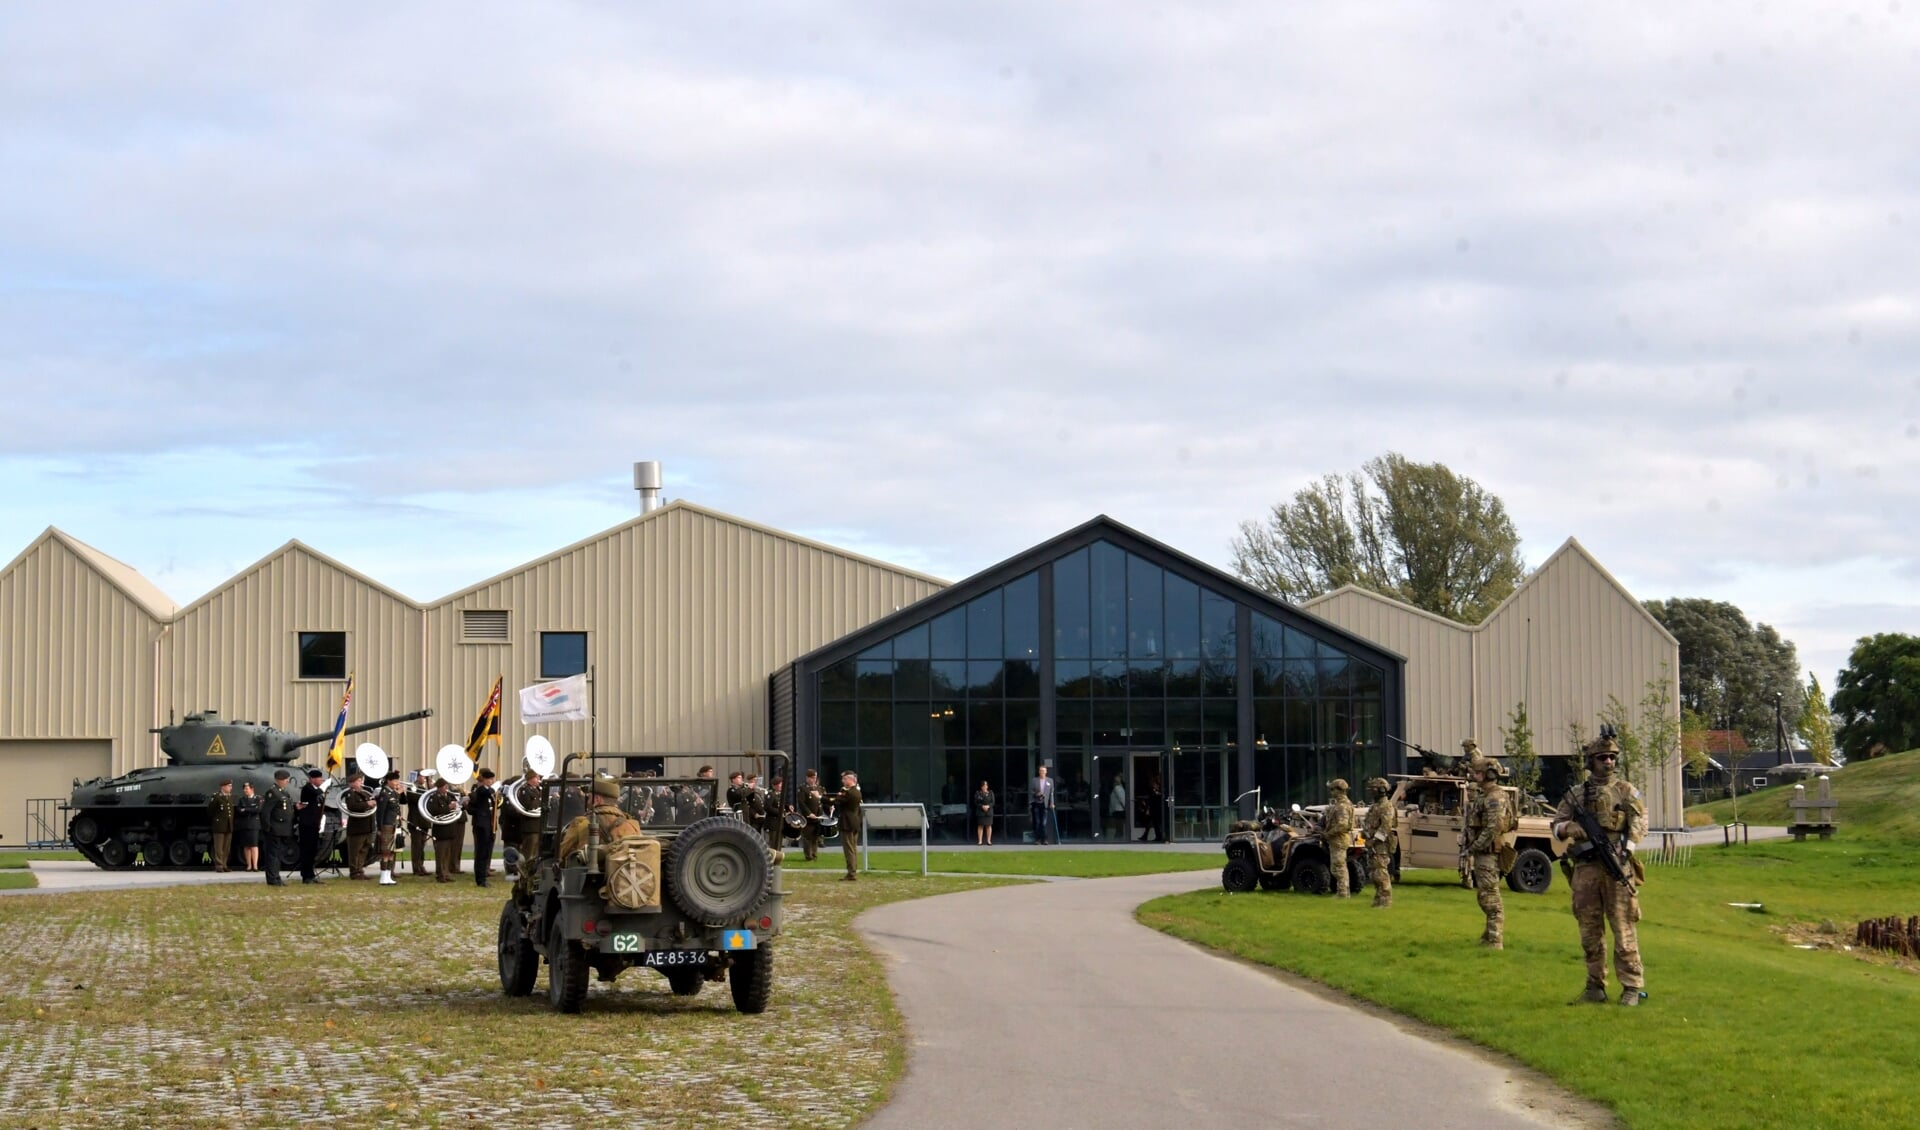 Bevrijdingsmuseum Zeeland in Nieuwdorp.